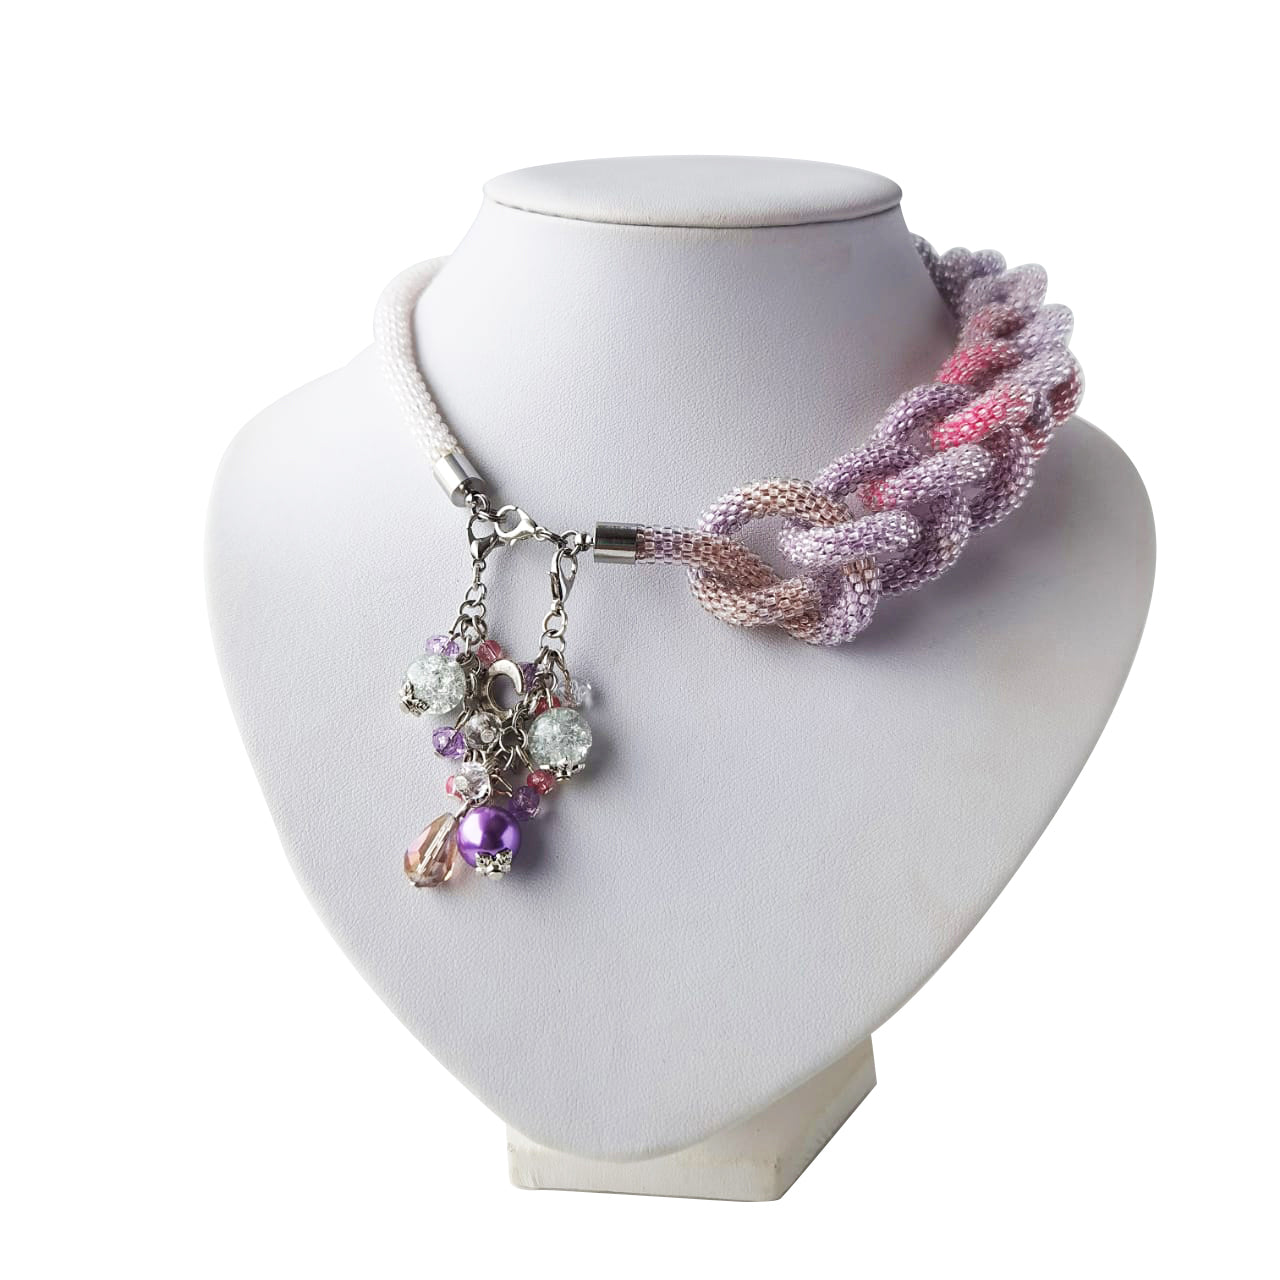 Layla Lariat necklace, Lariat Necklace, Y Necklace,long chunky Y necklace, statement necklace Simple Y Necklace, Falling Necklace, Long Necklace